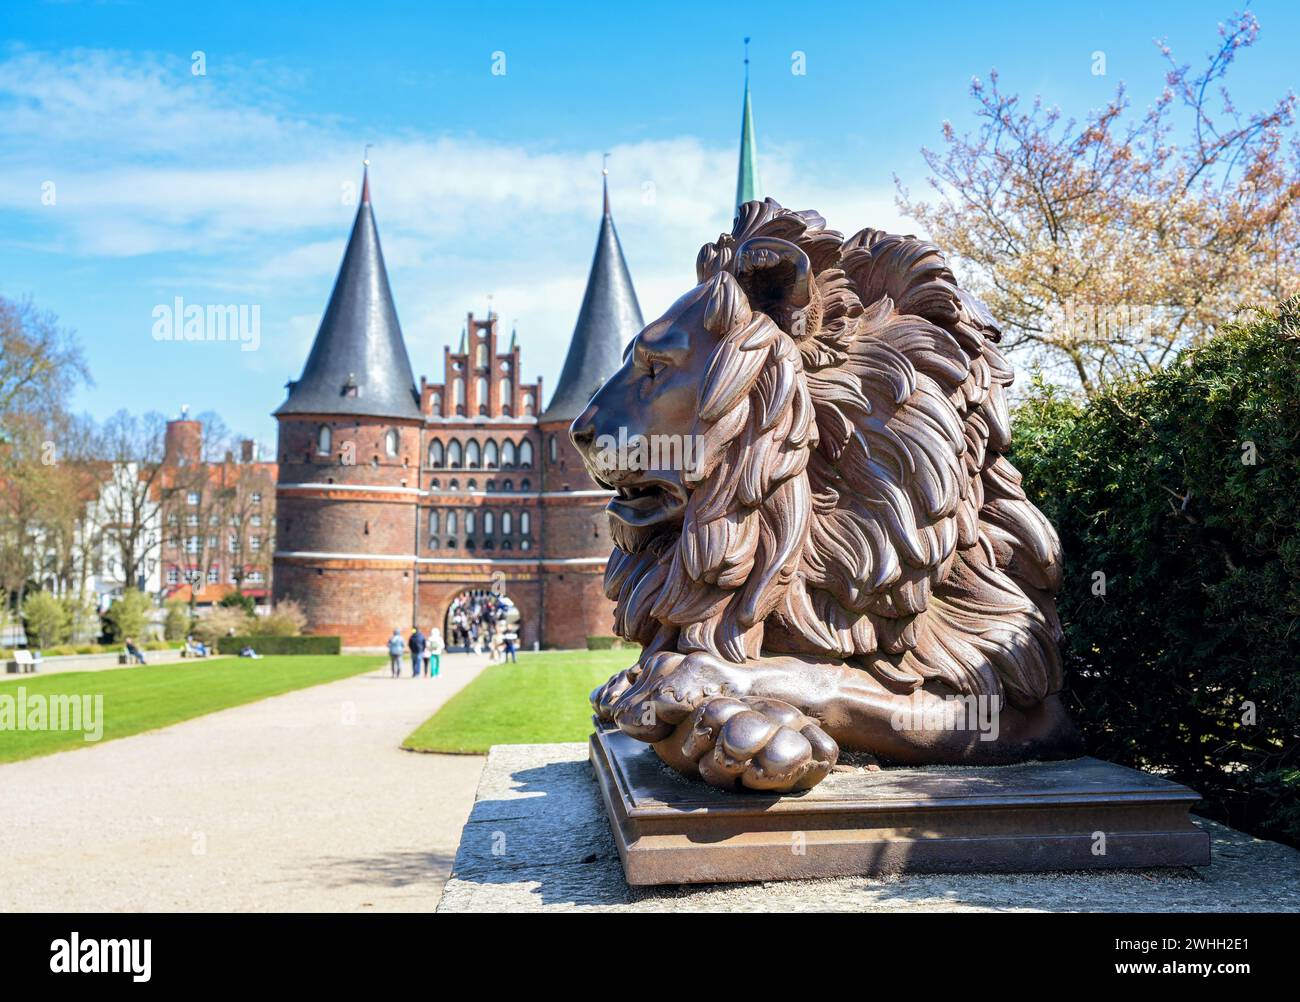 Löwenstatue von eisernen Wachen das Lubecker Holstentor oder Holstentor, historisches Wahrzeichen und Touristenattraktion unter blauem Himmel, s Stockfoto